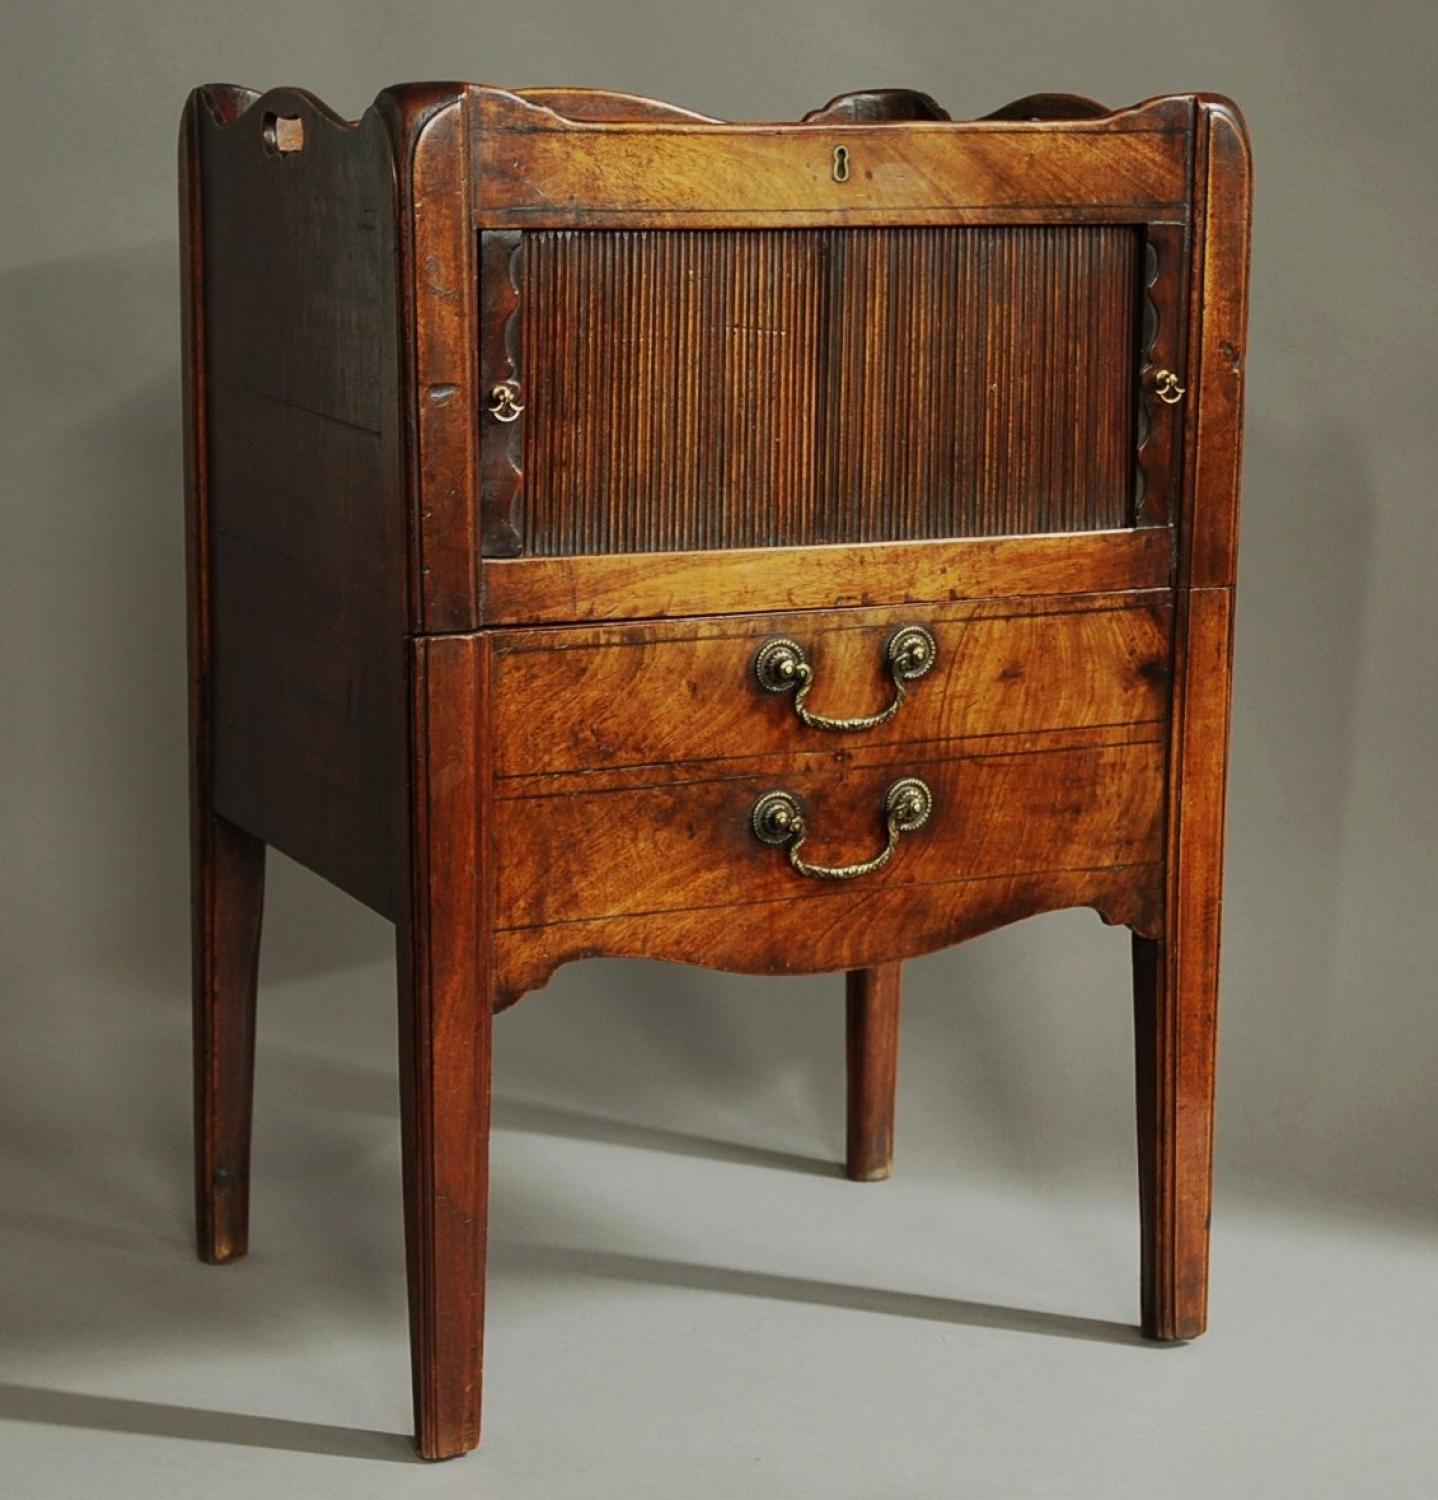 18th century mahogany night table